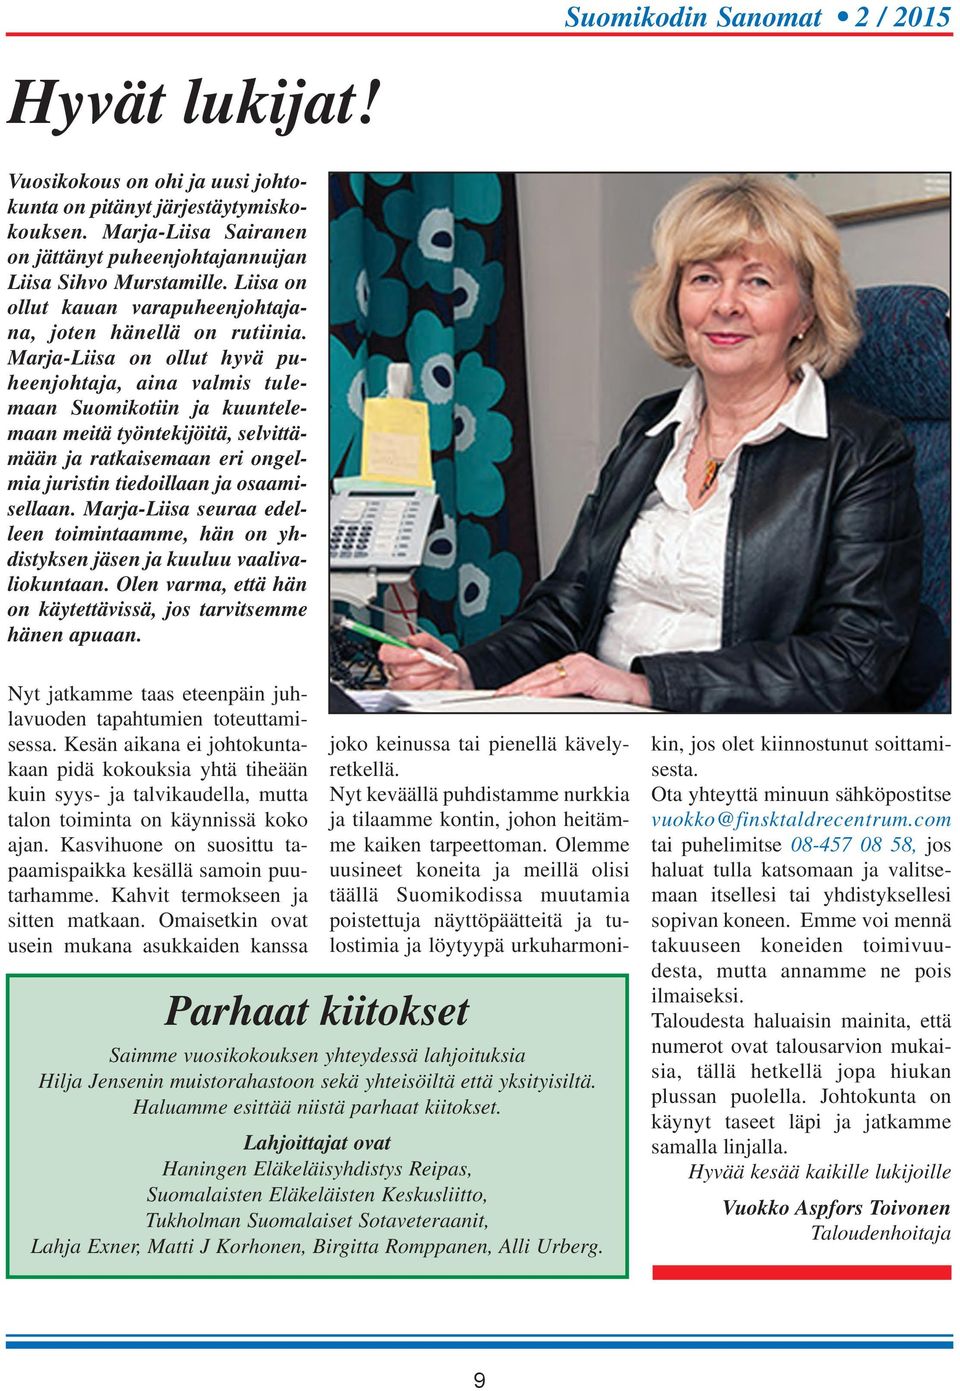 Marja-Liisa on ollut hyvä puheenjohtaja, aina valmis tulemaan Suomikotiin ja kuuntelemaan meitä työntekijöitä, selvittämään ja ratkaisemaan eri ongelmia juristin tiedoillaan ja osaamisellaan.